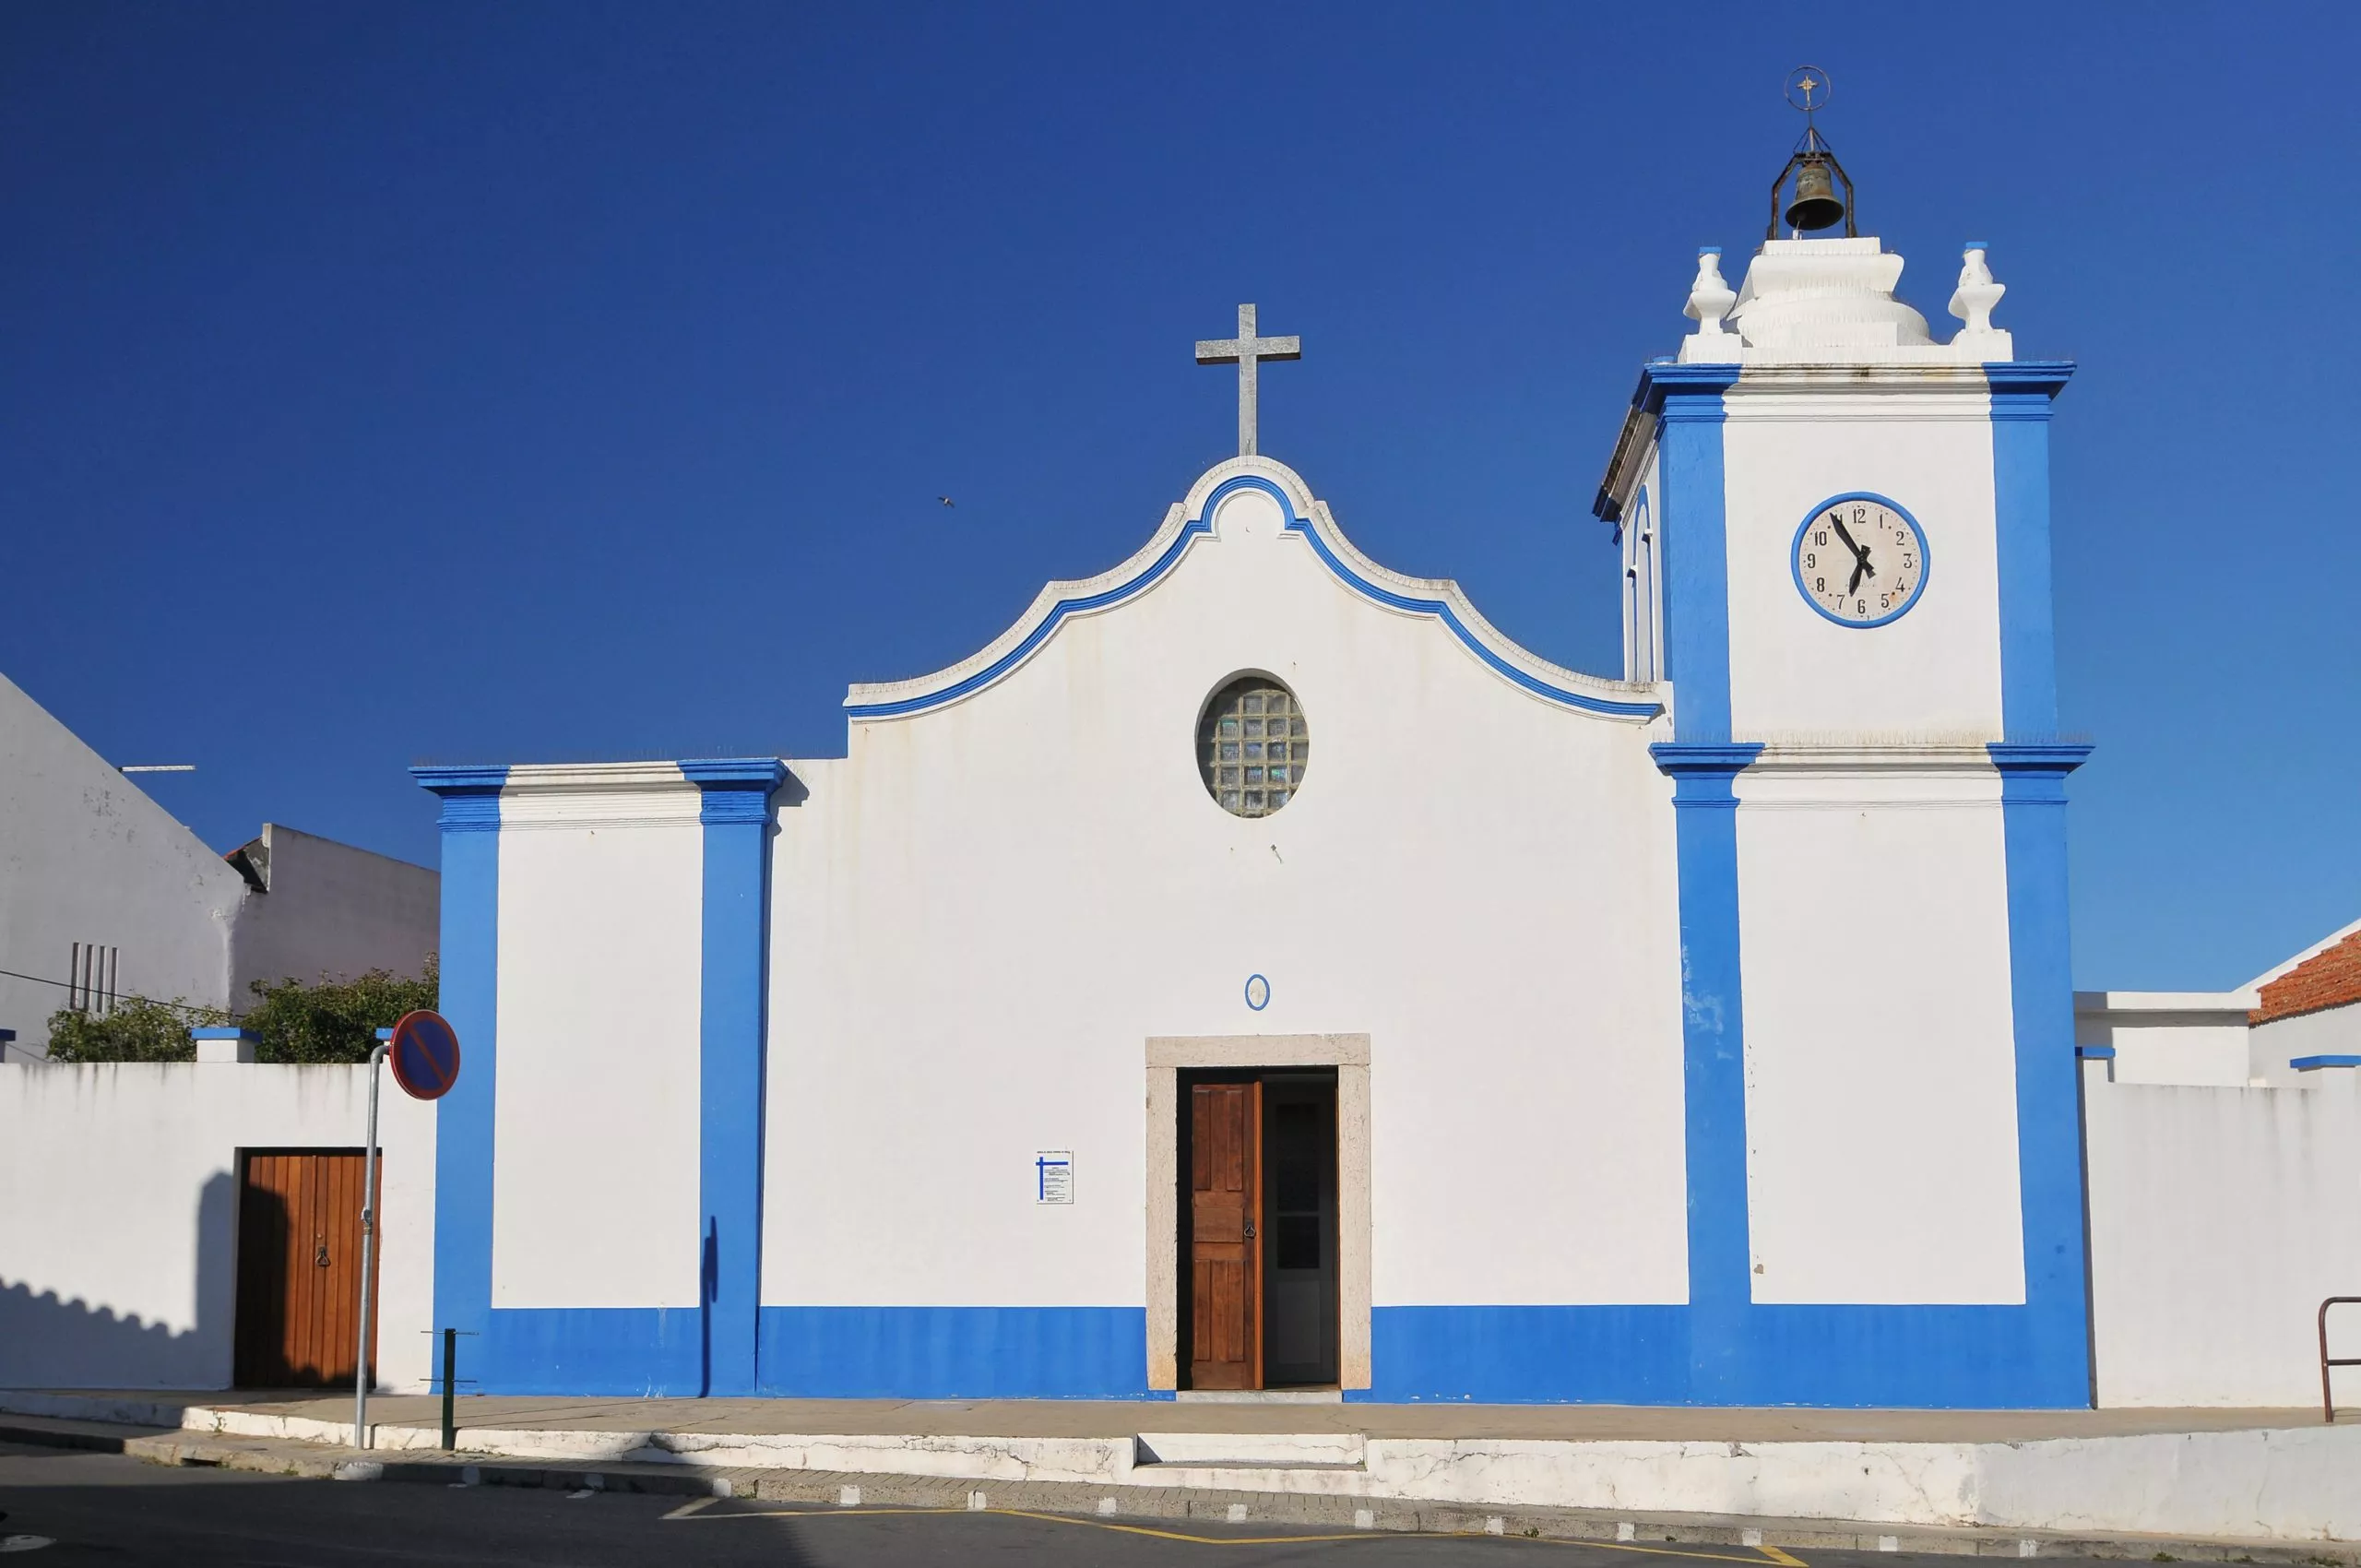 A typical Portuguese church in the village of Vila Nova de Milfontes Odemira Alentejo region Portugal.